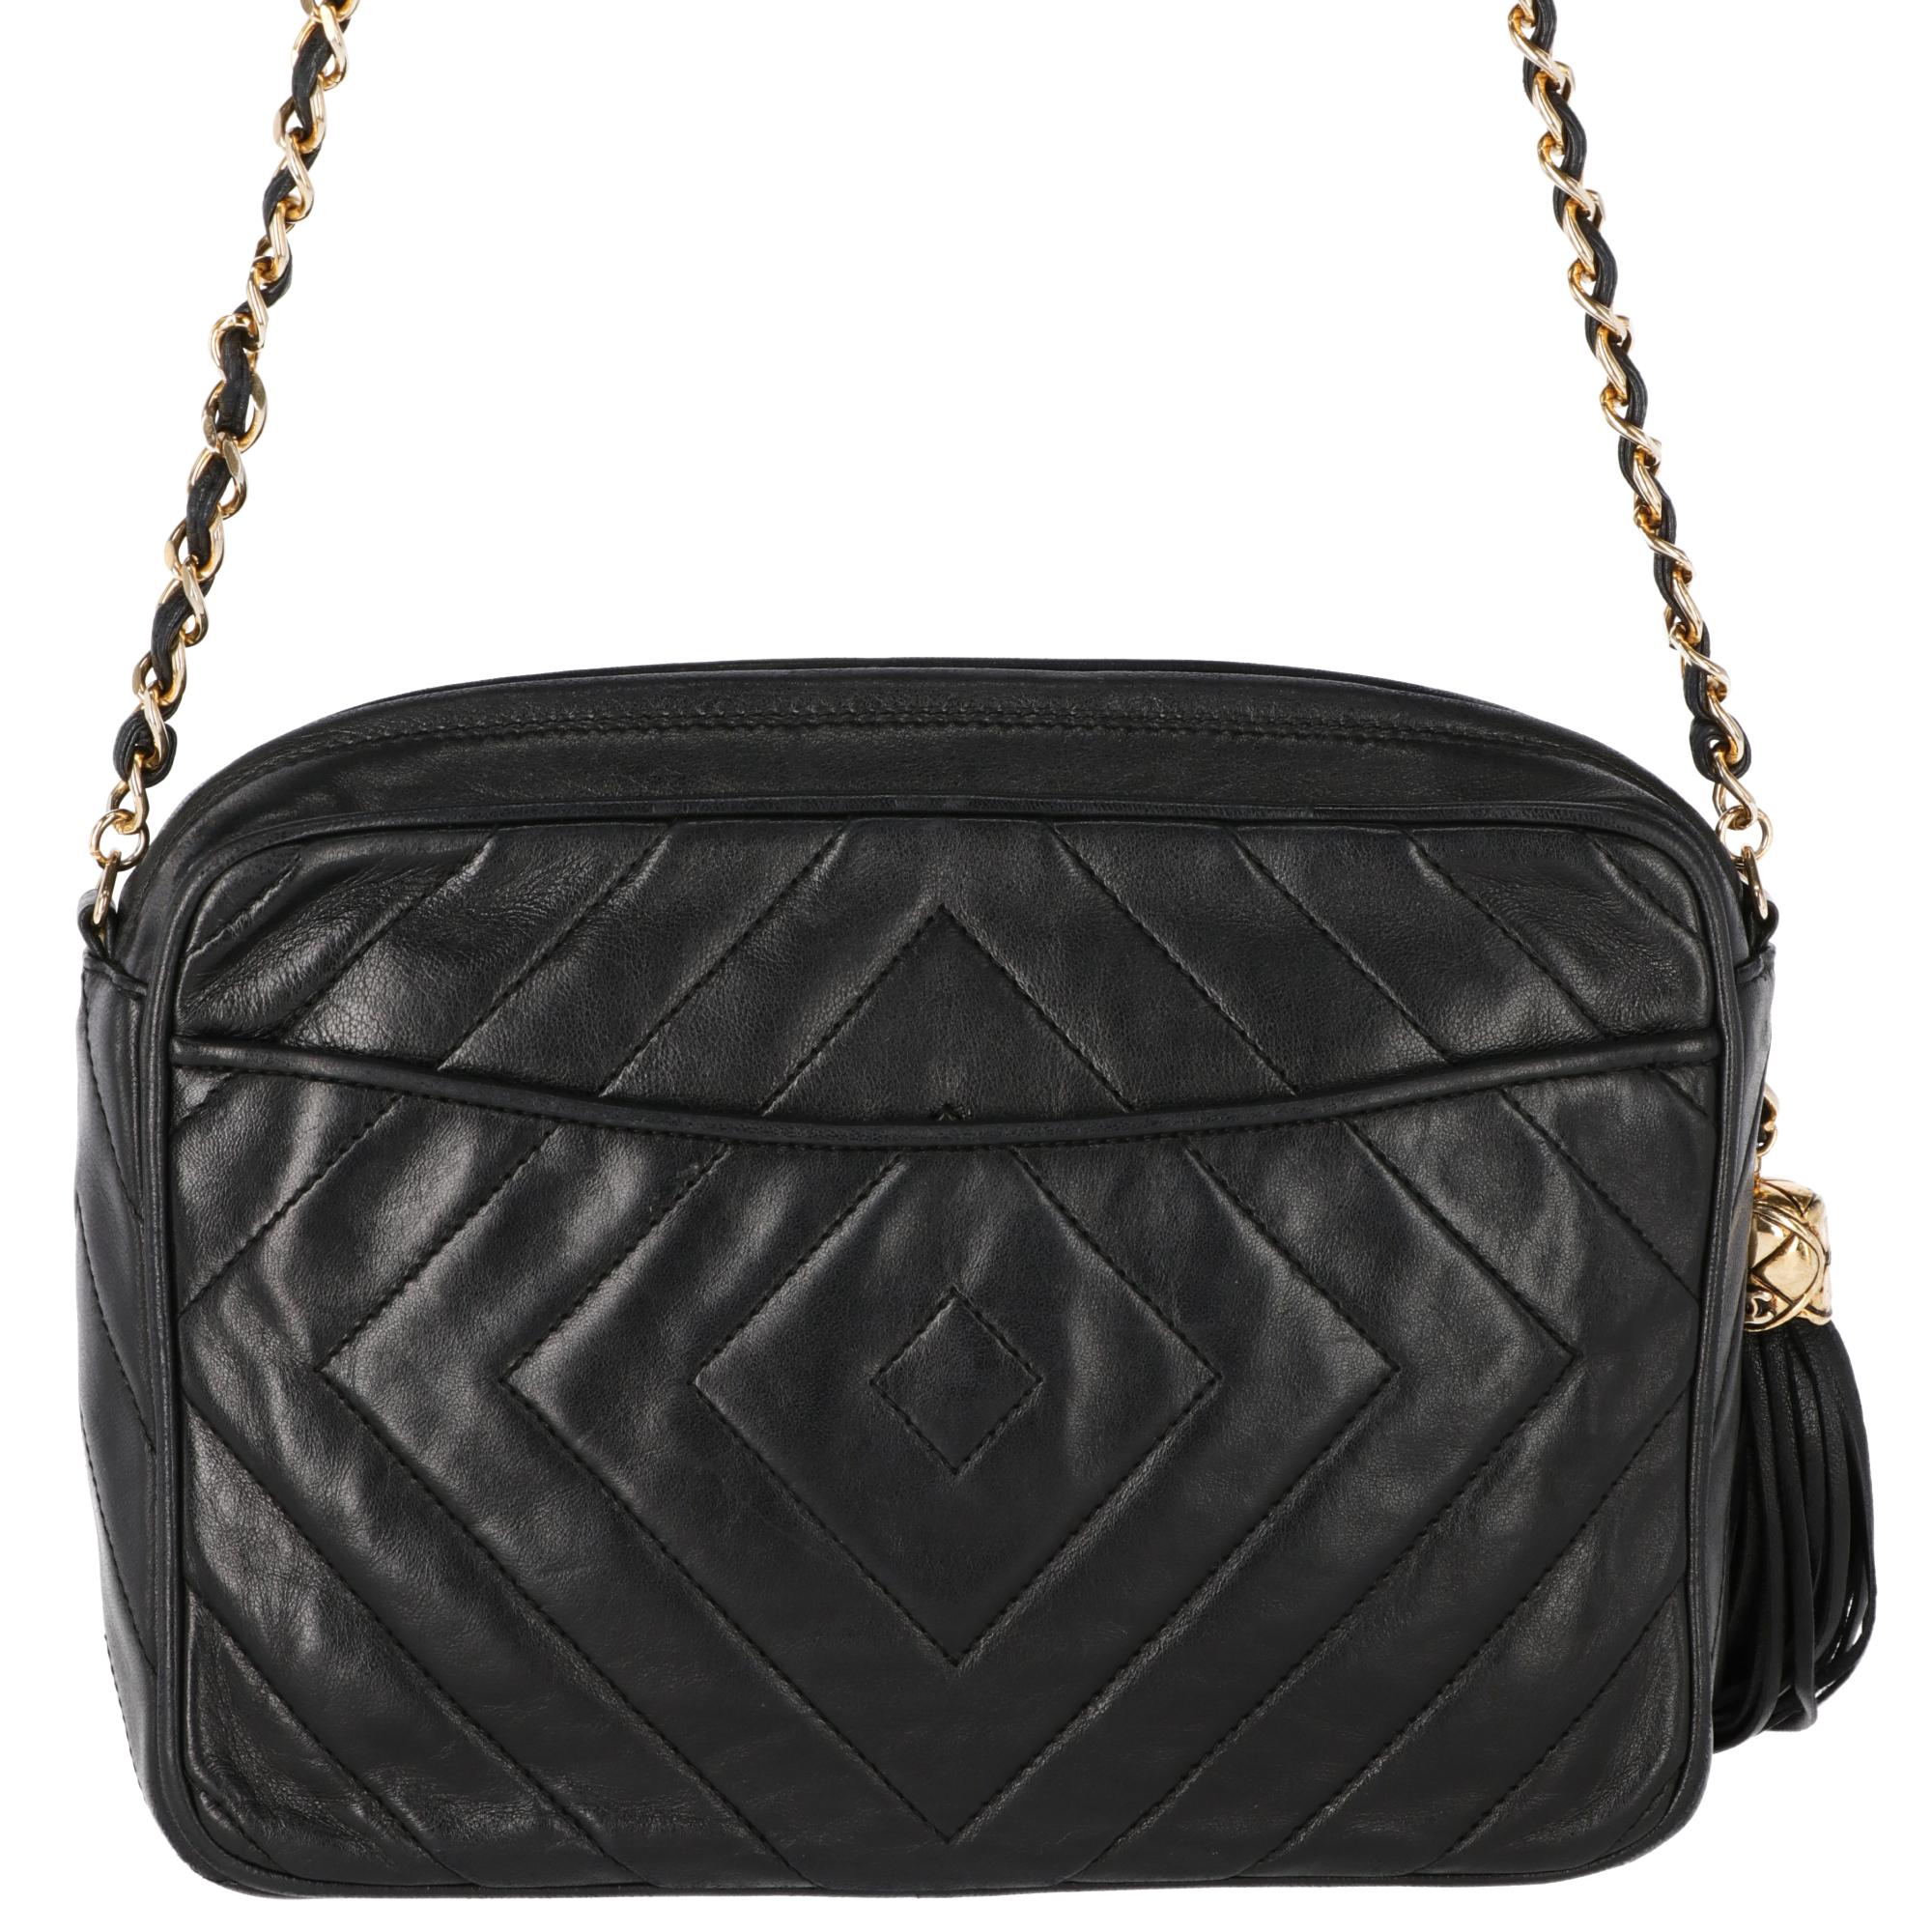 Women's 1990s Chanel Black Leather Shoulder Bag